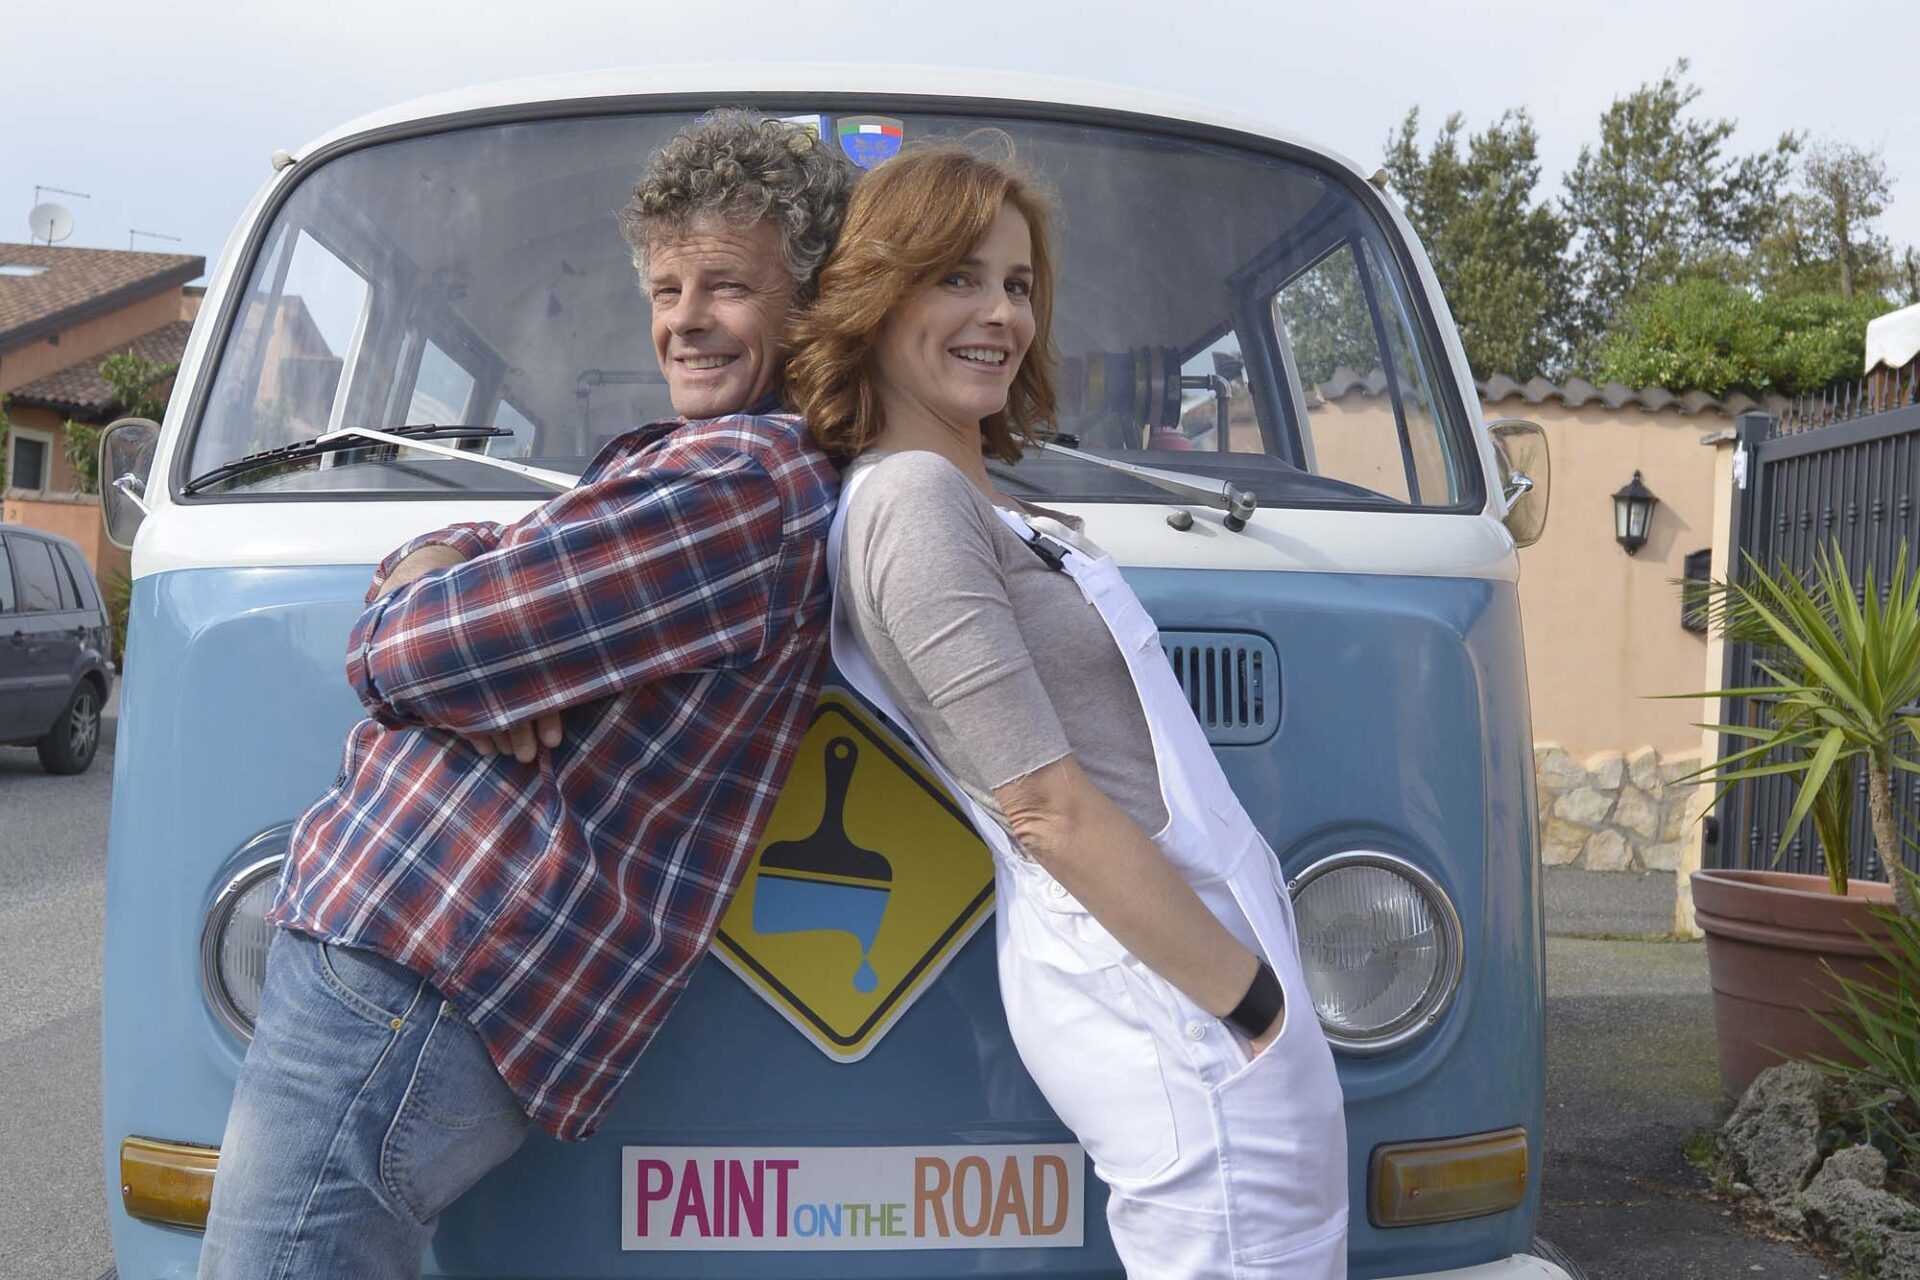 Torna Paint On the road con Barbara Gulienetti e Fabrizio Rogano su Real Time | Digitale terrestre: Dtti.it